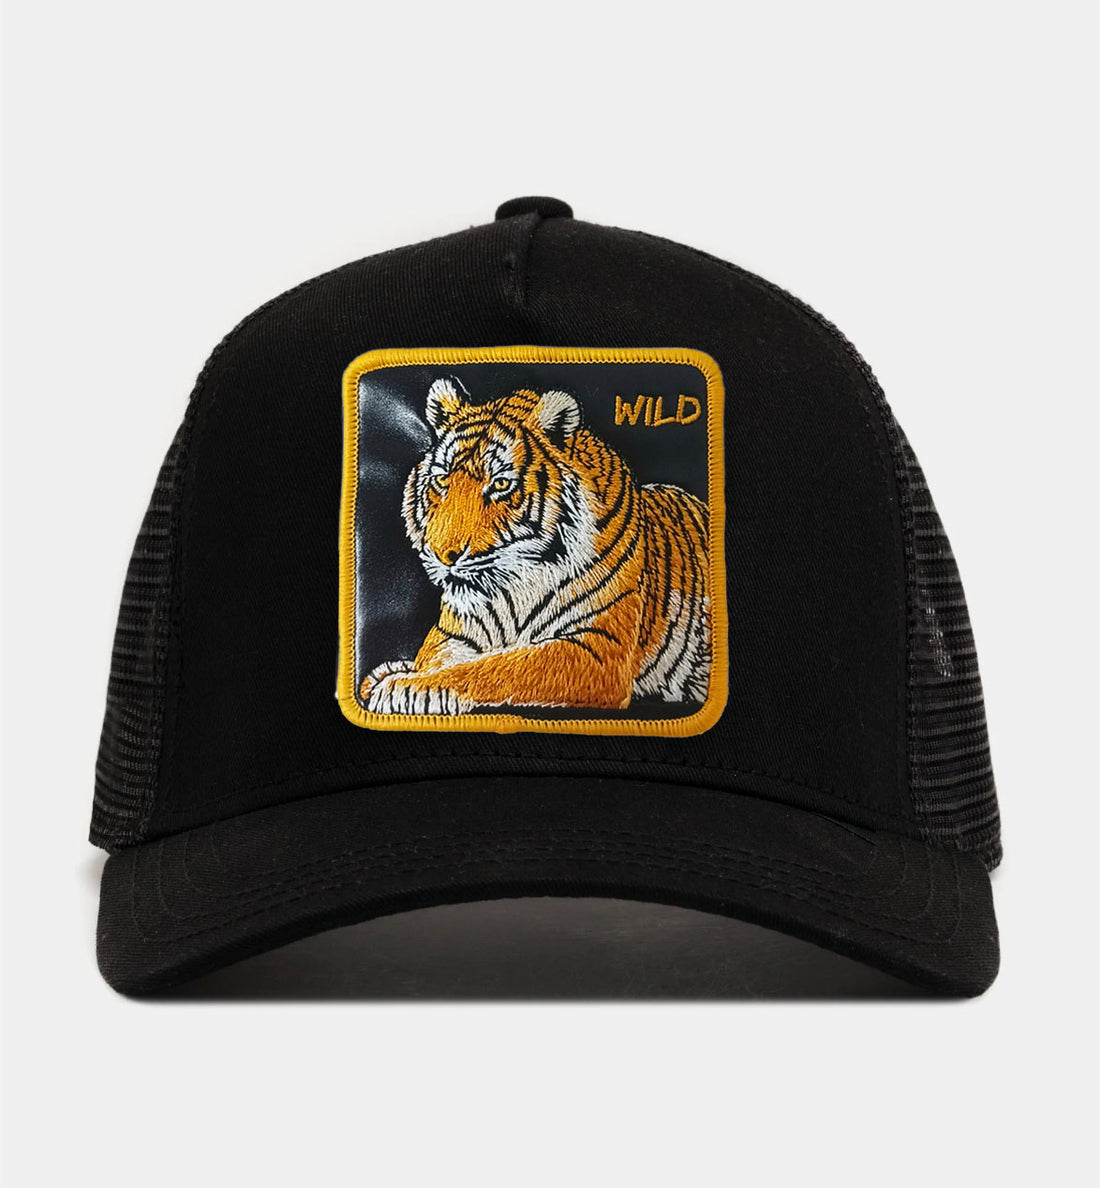 Tiger - "Wild" Trucker Hat